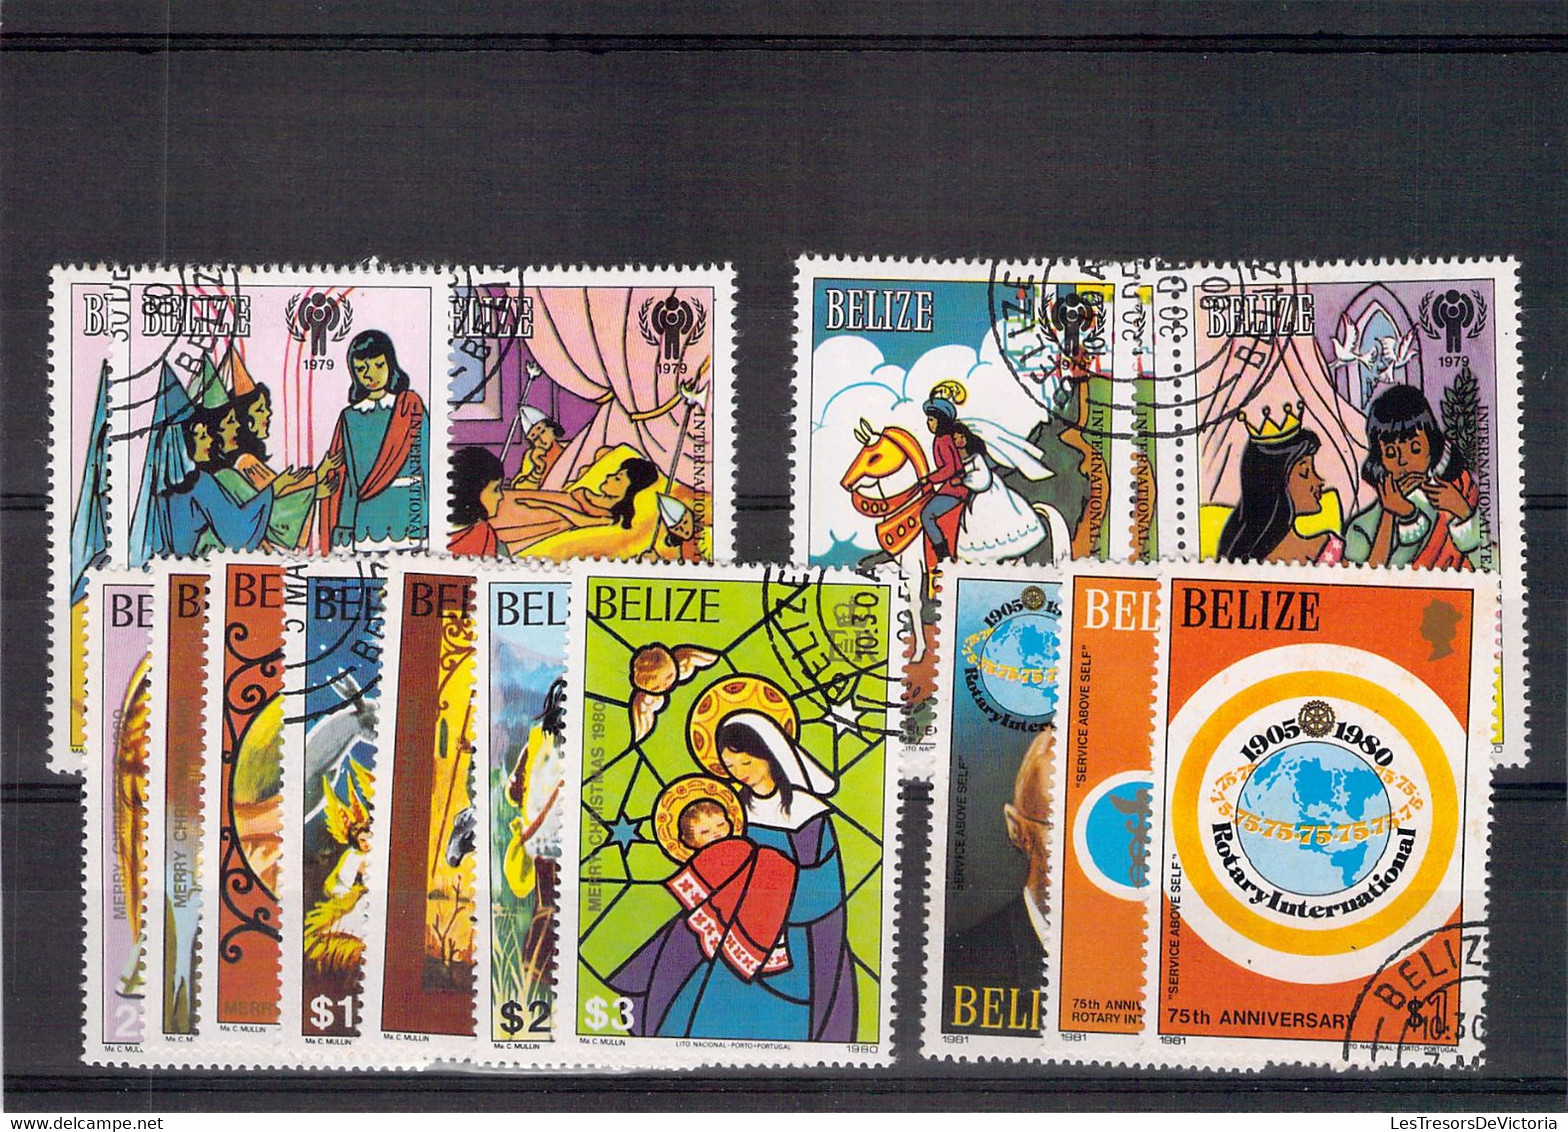 Collection - Lot de timbres et blocs Belize   - PRIX DE DEPART A 10 EUROS !